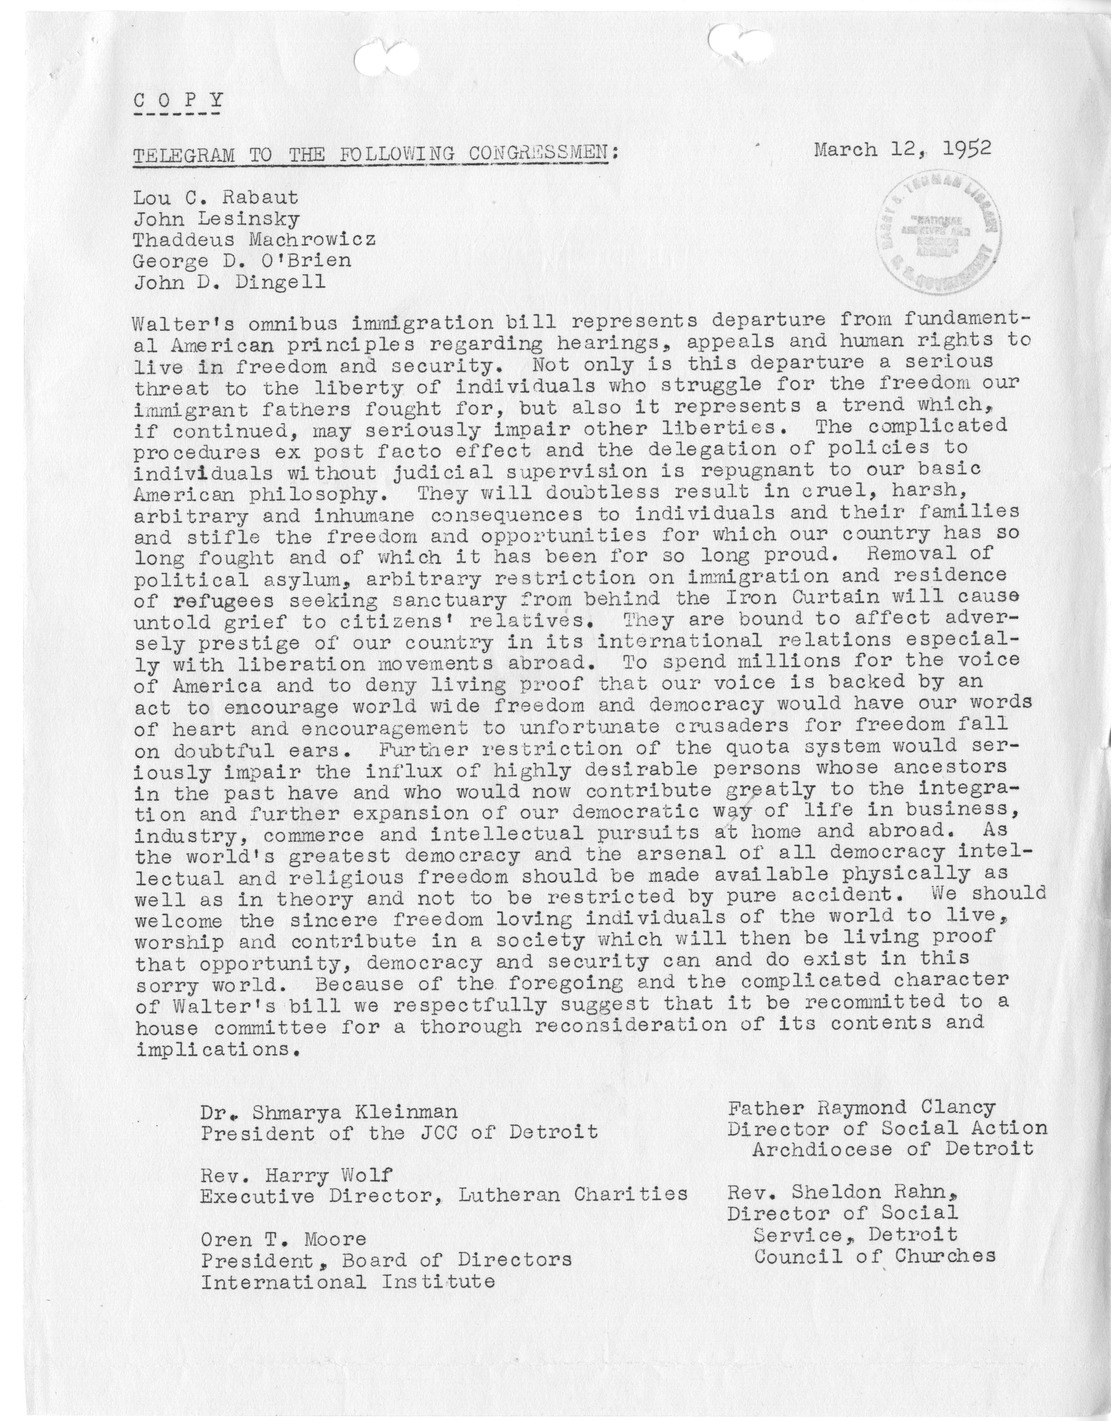 Memorandum from Julius Edelstein to Richard Neustadt, with Attachments